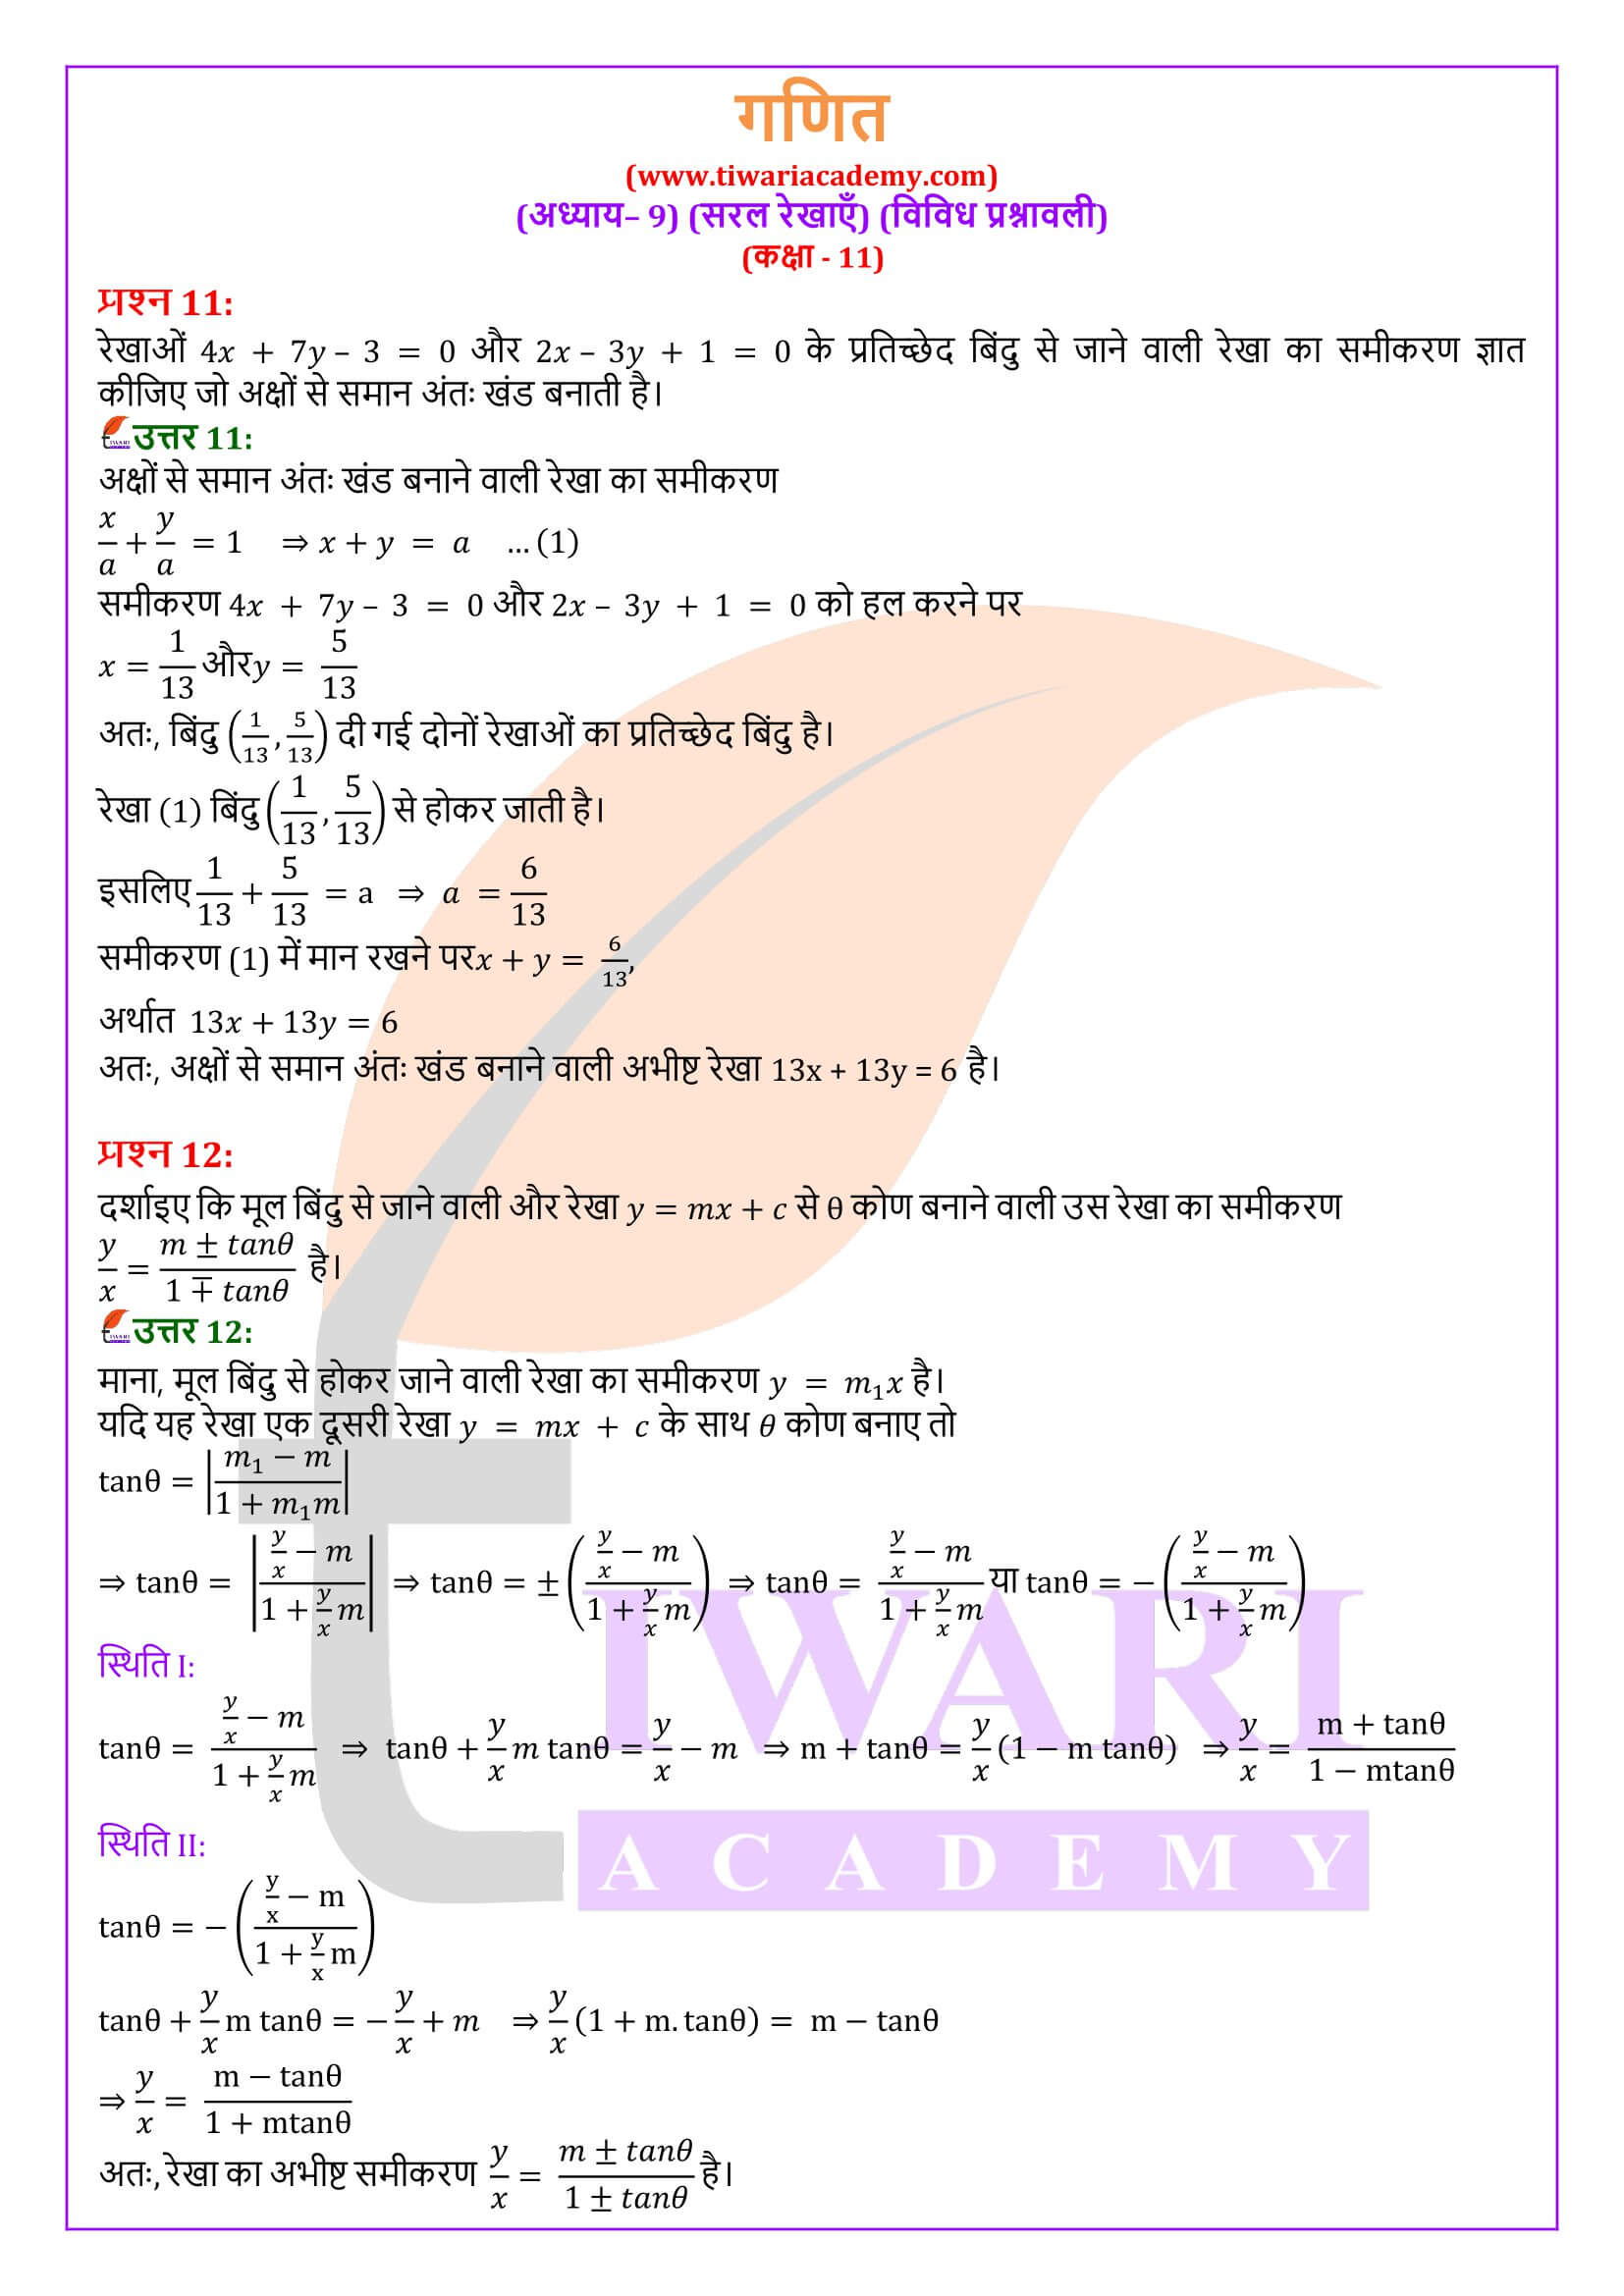 कक्षा 11 गणित अध्याय 9 विविध प्रश्नावली के हल हिंदी में